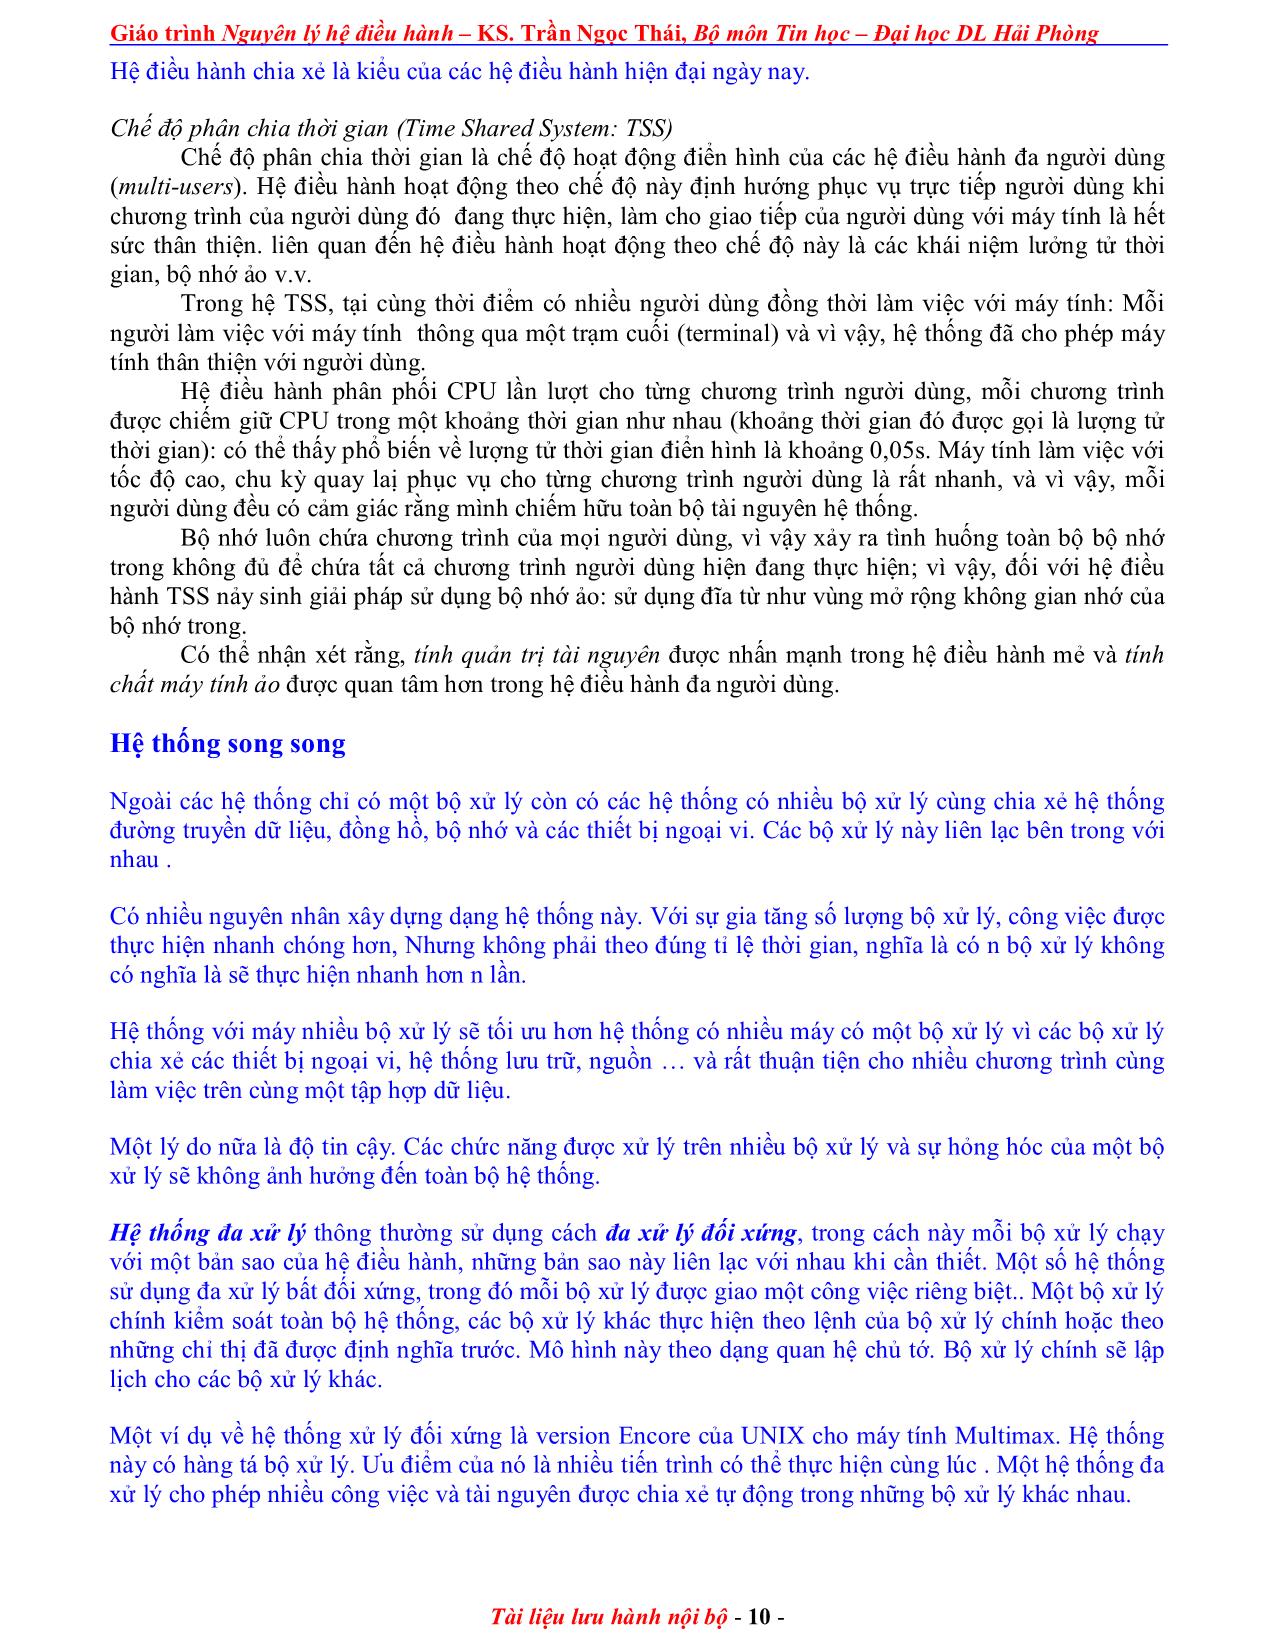 Giáo trình Nguyên lý điều hành (Phần 1) trang 10